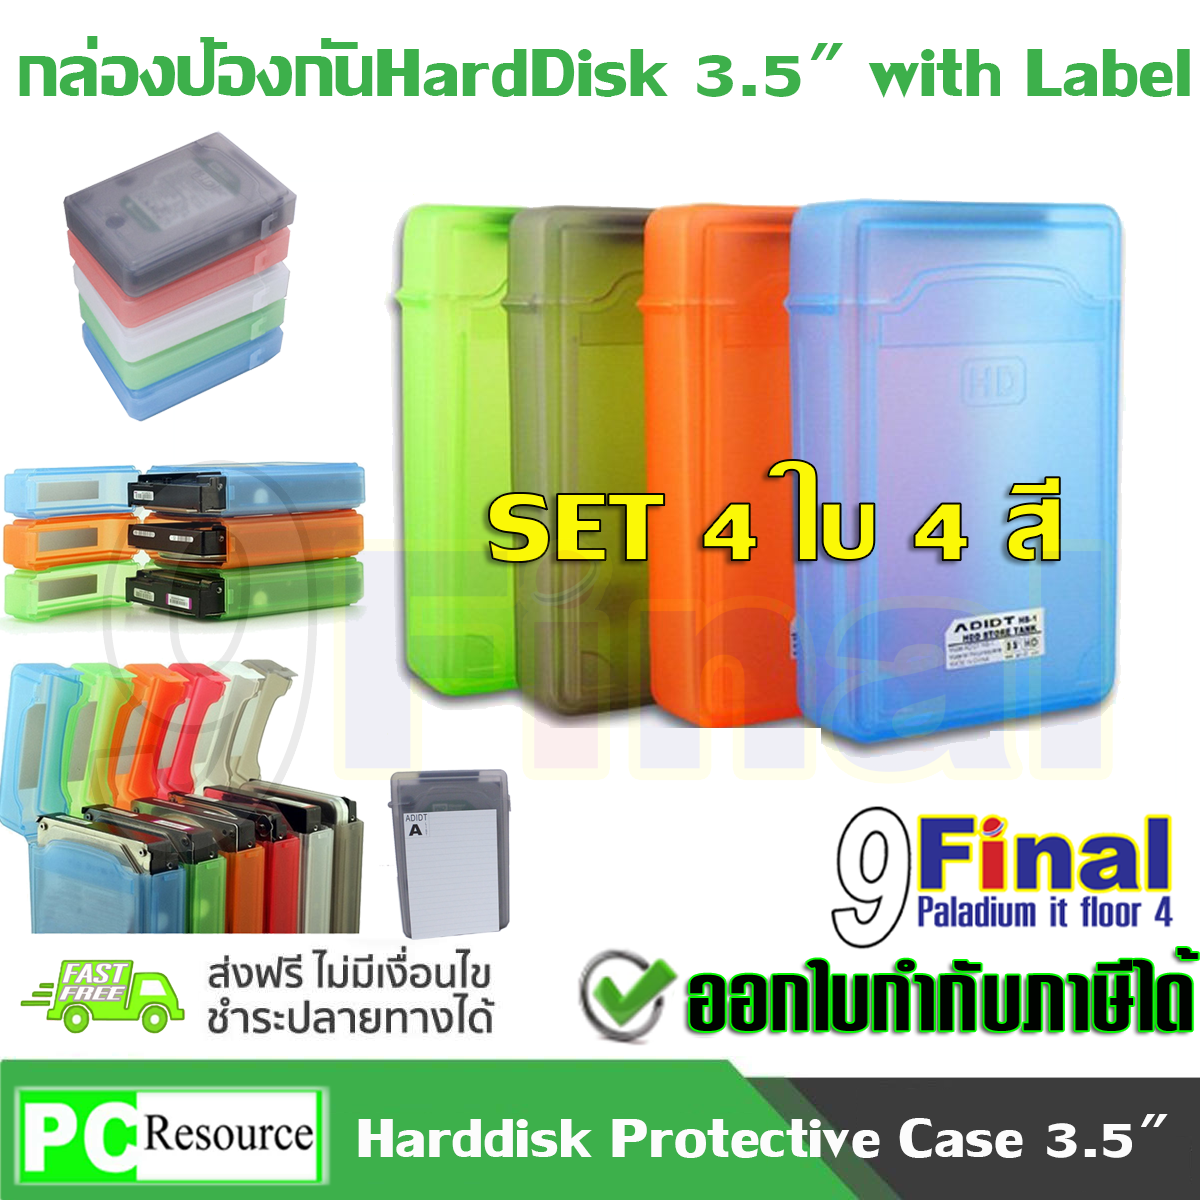 9FINAL กล่องใส่ฮาร์ดดิสถ์ 3.5  ,กล่องเก็บฮาร์ดดิสถ์ ,กล่องเก็บHarddisk , กล่องใส่harddisk กล่องกันกระแทก HDD , กล่องใส่ HDD,Anti Static HDD , Harddisk , SSD Protective ขนาด 3.5 นิ้ว พร้อม Label สำหรับเขียนl *4 BOX 3.5  (Gray,Green, Red , Cyan)